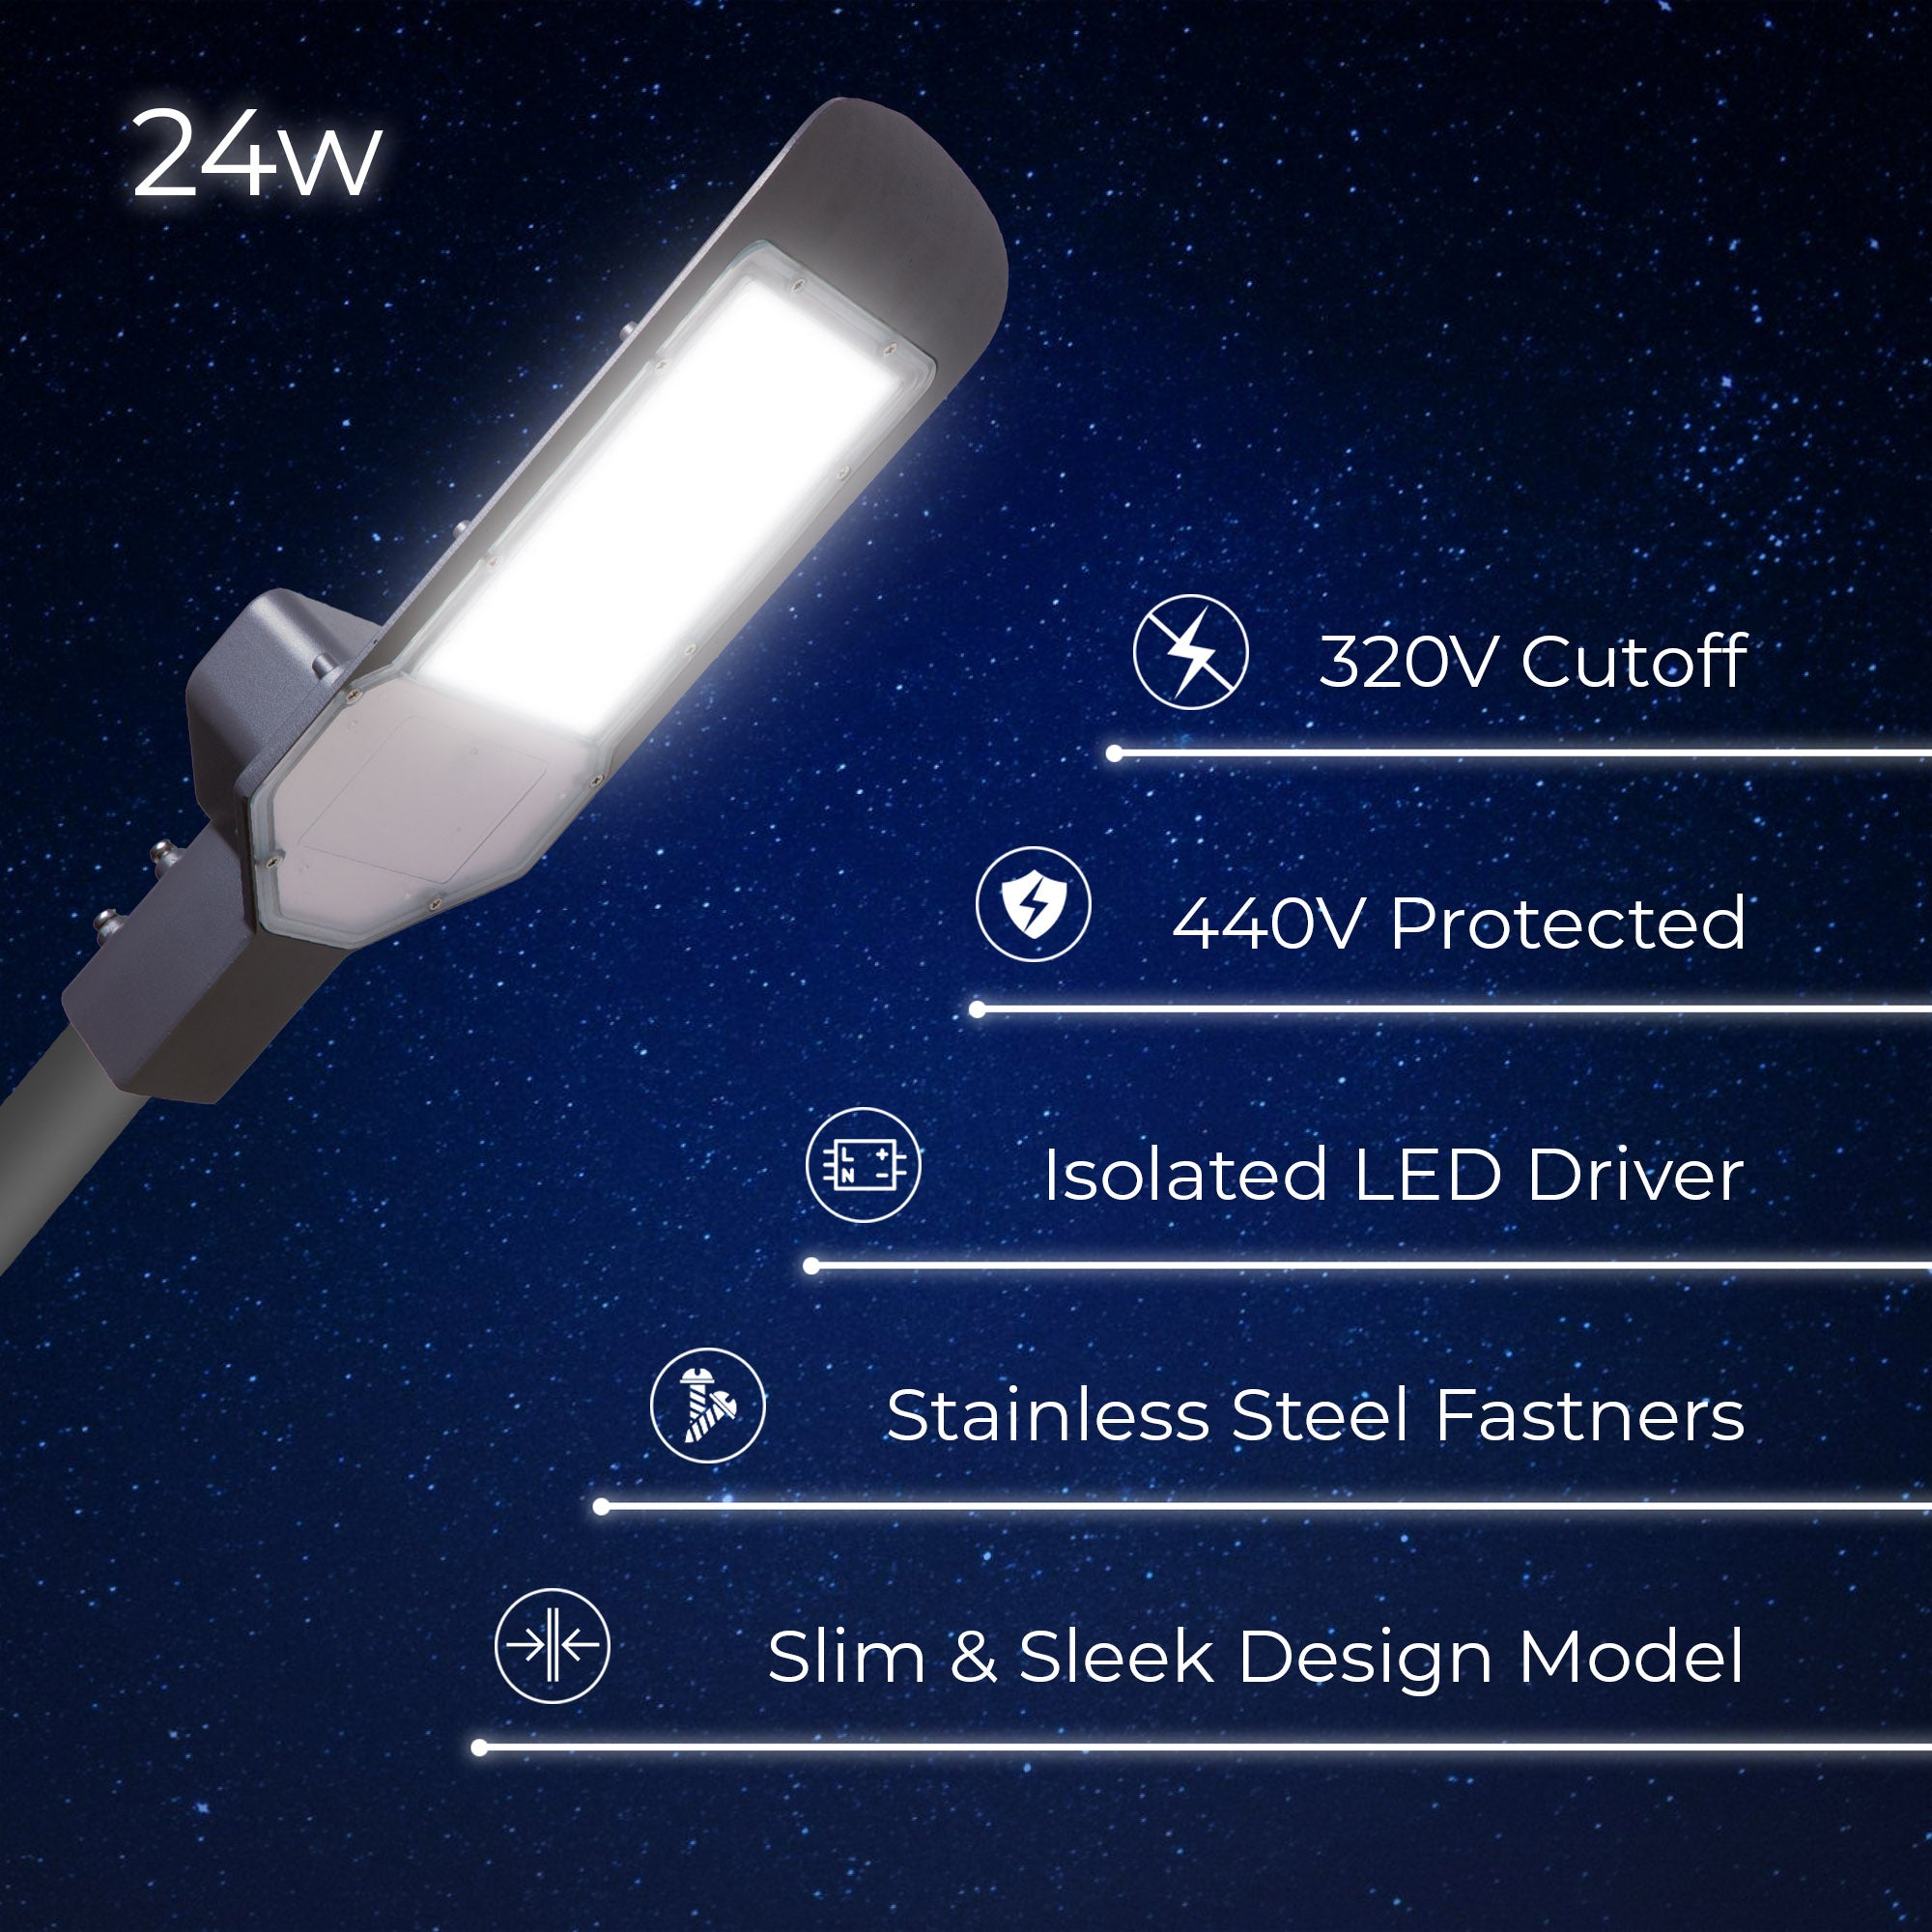 Specifications of Lexa 24W led street light #watts_24w